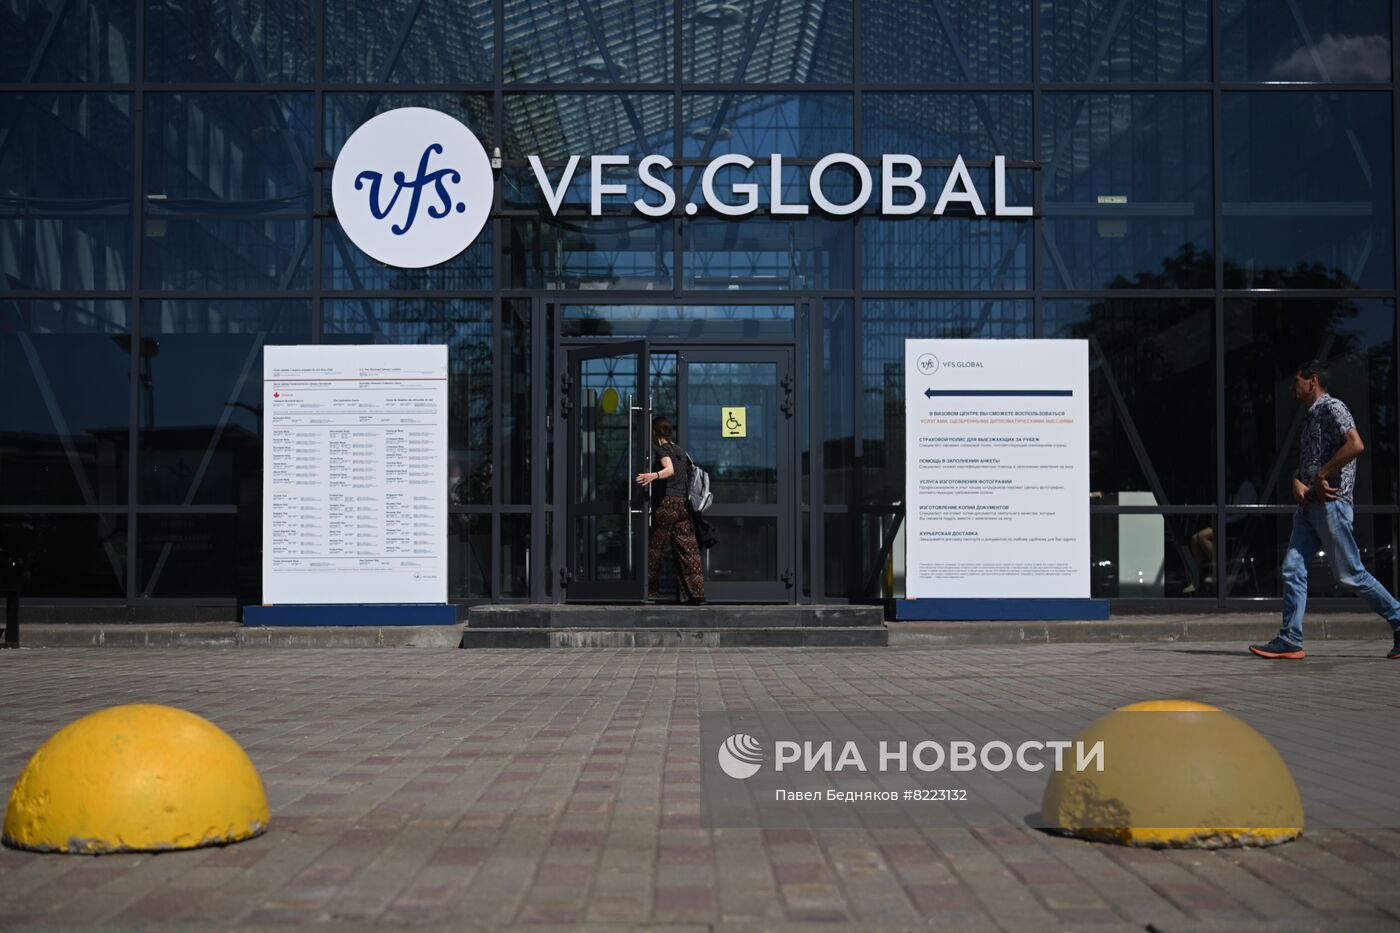 Визовые центры компании VFS Global